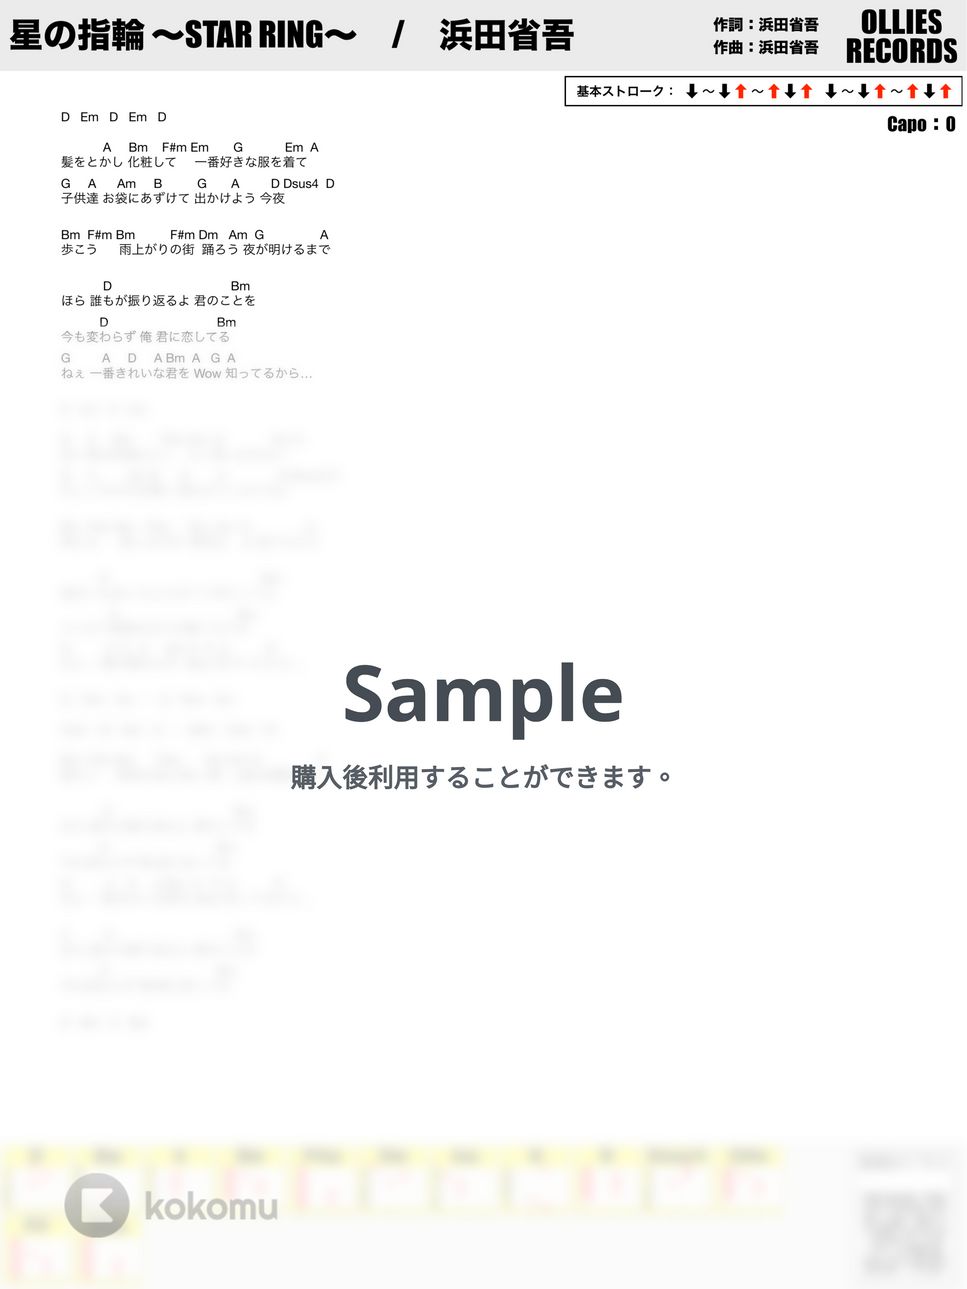 浜田省吾 - 星の指輪 by オーリーズの音楽室